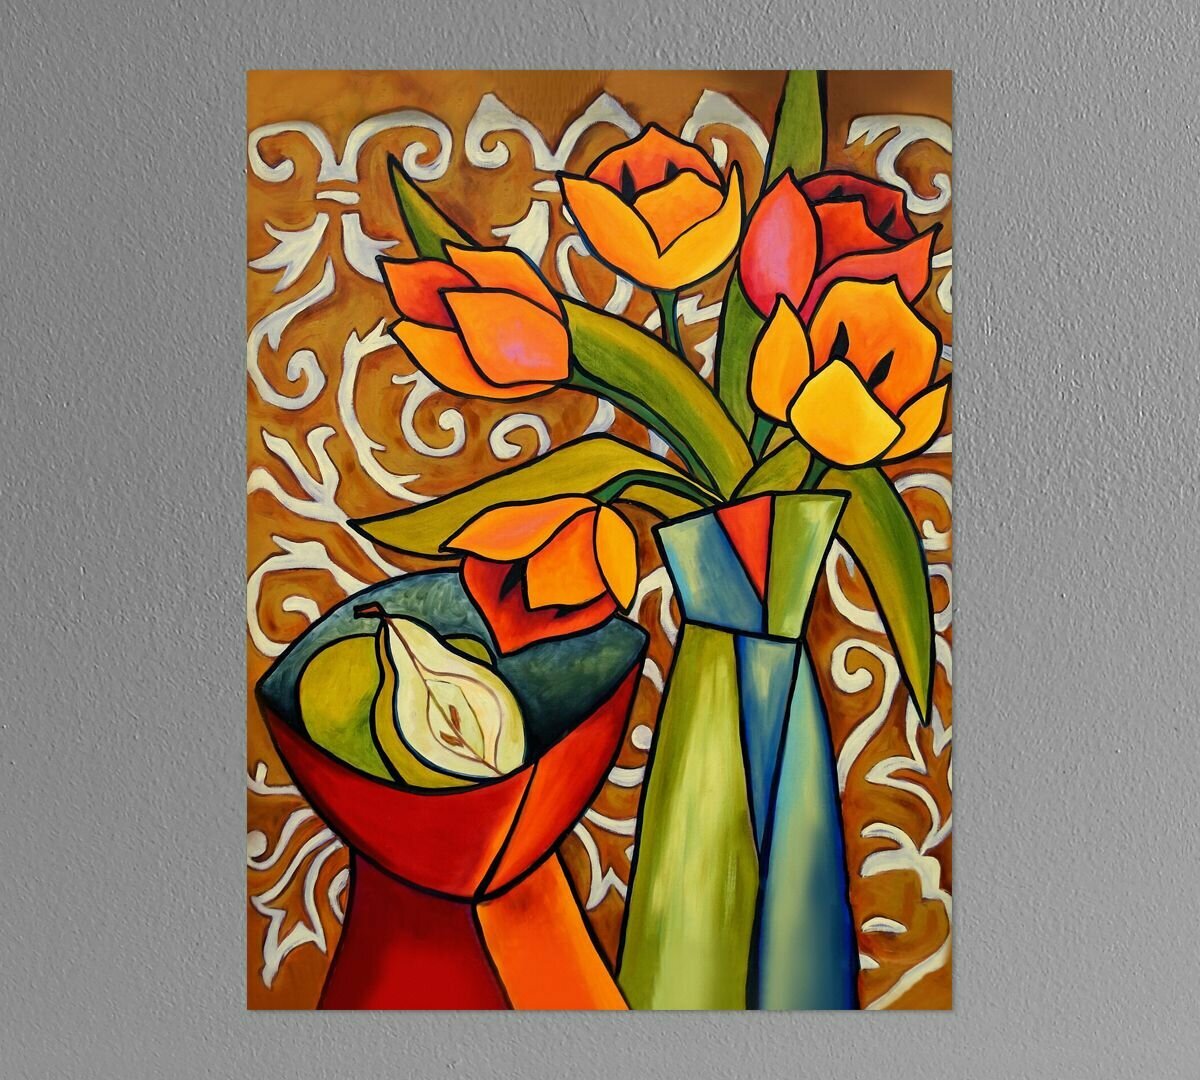 Картина для интерьера "Тюльпаны и груши" Элиза Боунер 40х60 см натуральный холст. Коллекция - натюрморт, кубизм, пейзаж, мексиканская живопись.